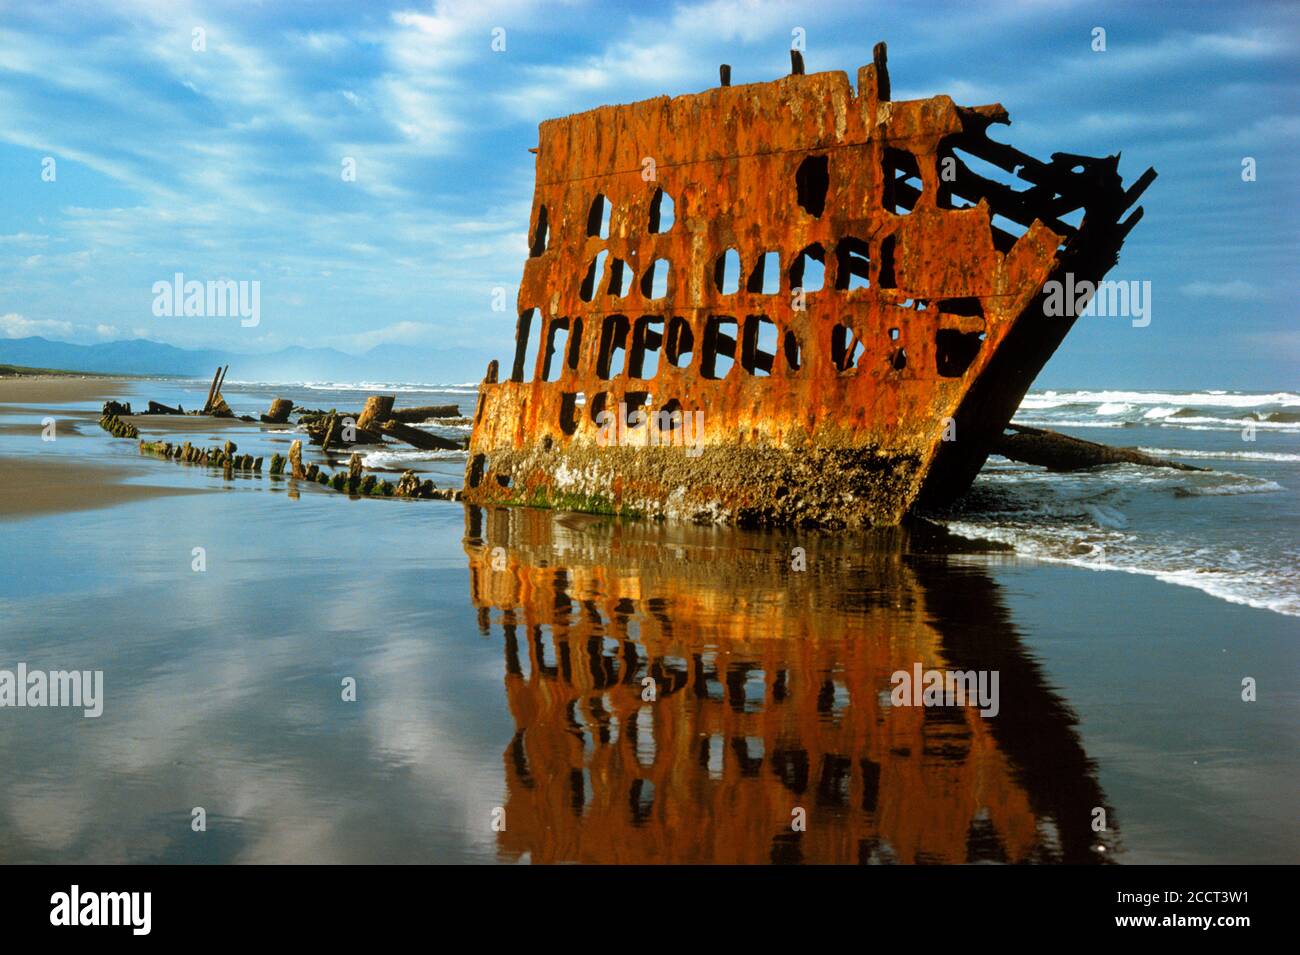 Silhouetted rostiger Rumpf des alten versunkenen Schiffes Peter Iredale auf Nördliche Küste von Oregon, die sich vor nassem Sandstrand spiegelt Stockfoto